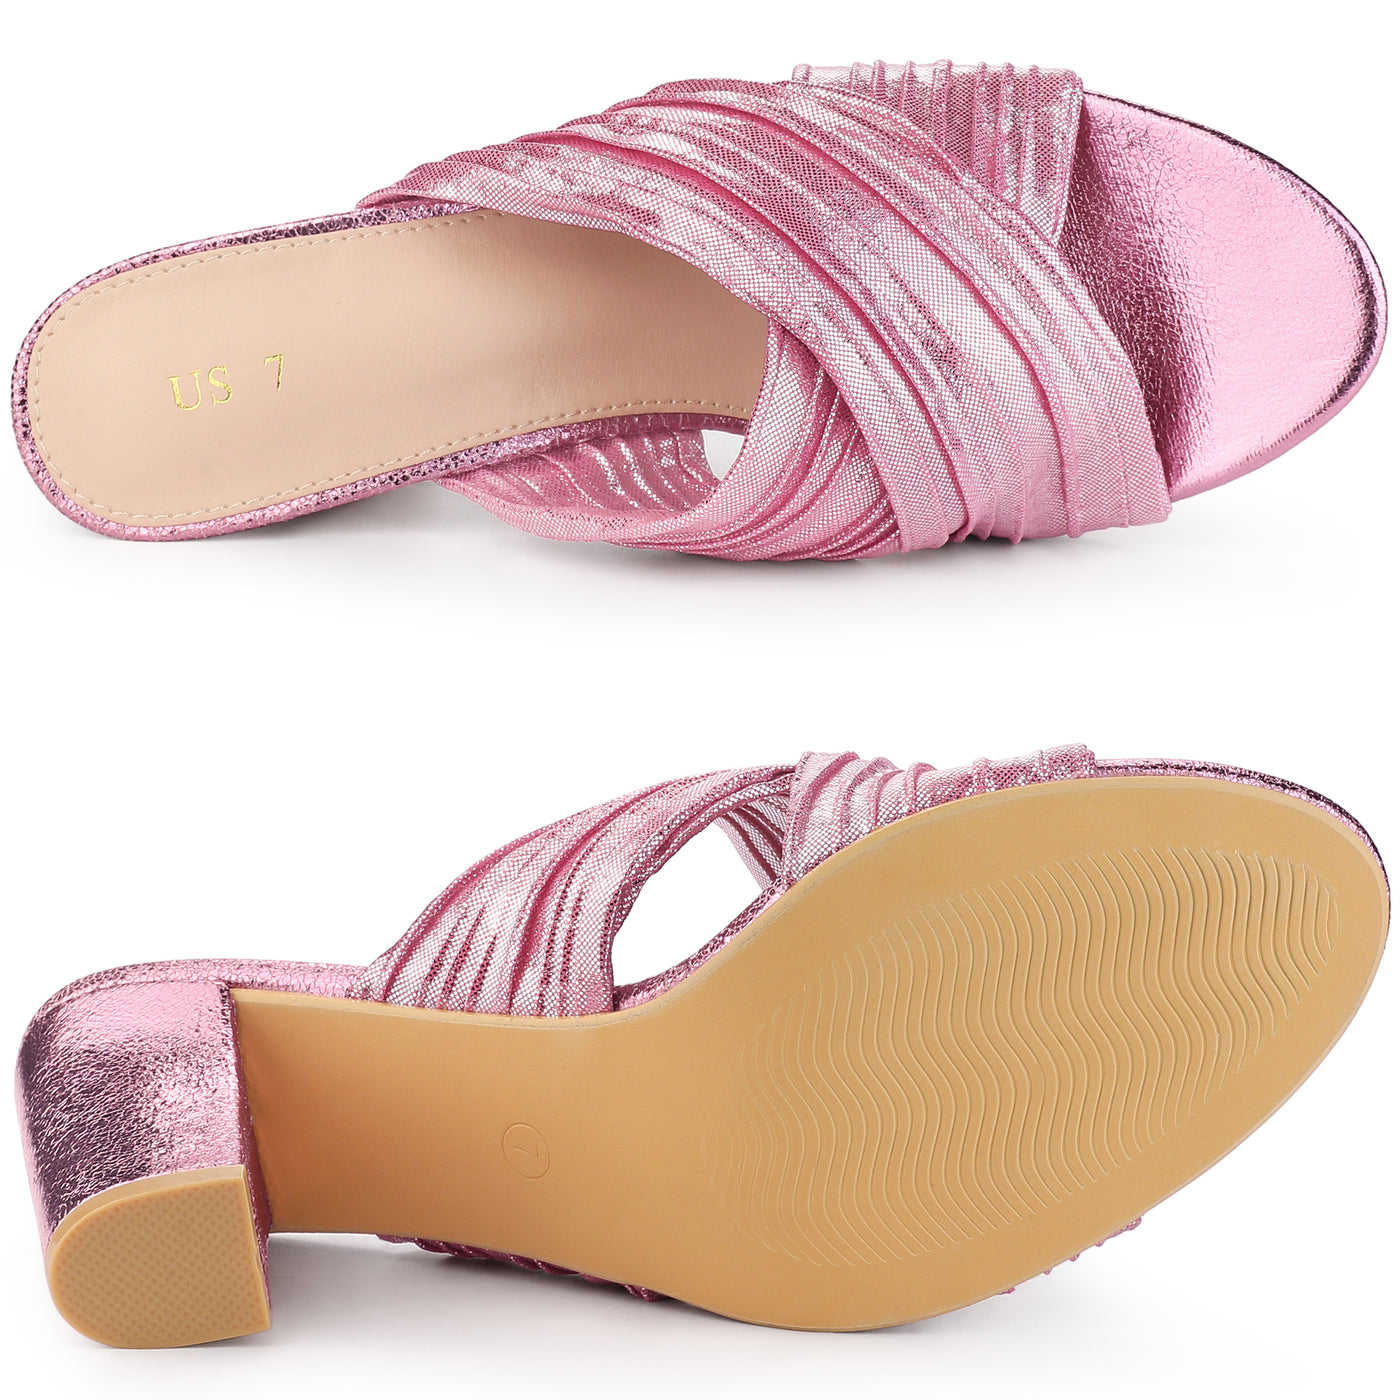 Allegra K Women's Slouches Slip on Block Heel Slide Sandals